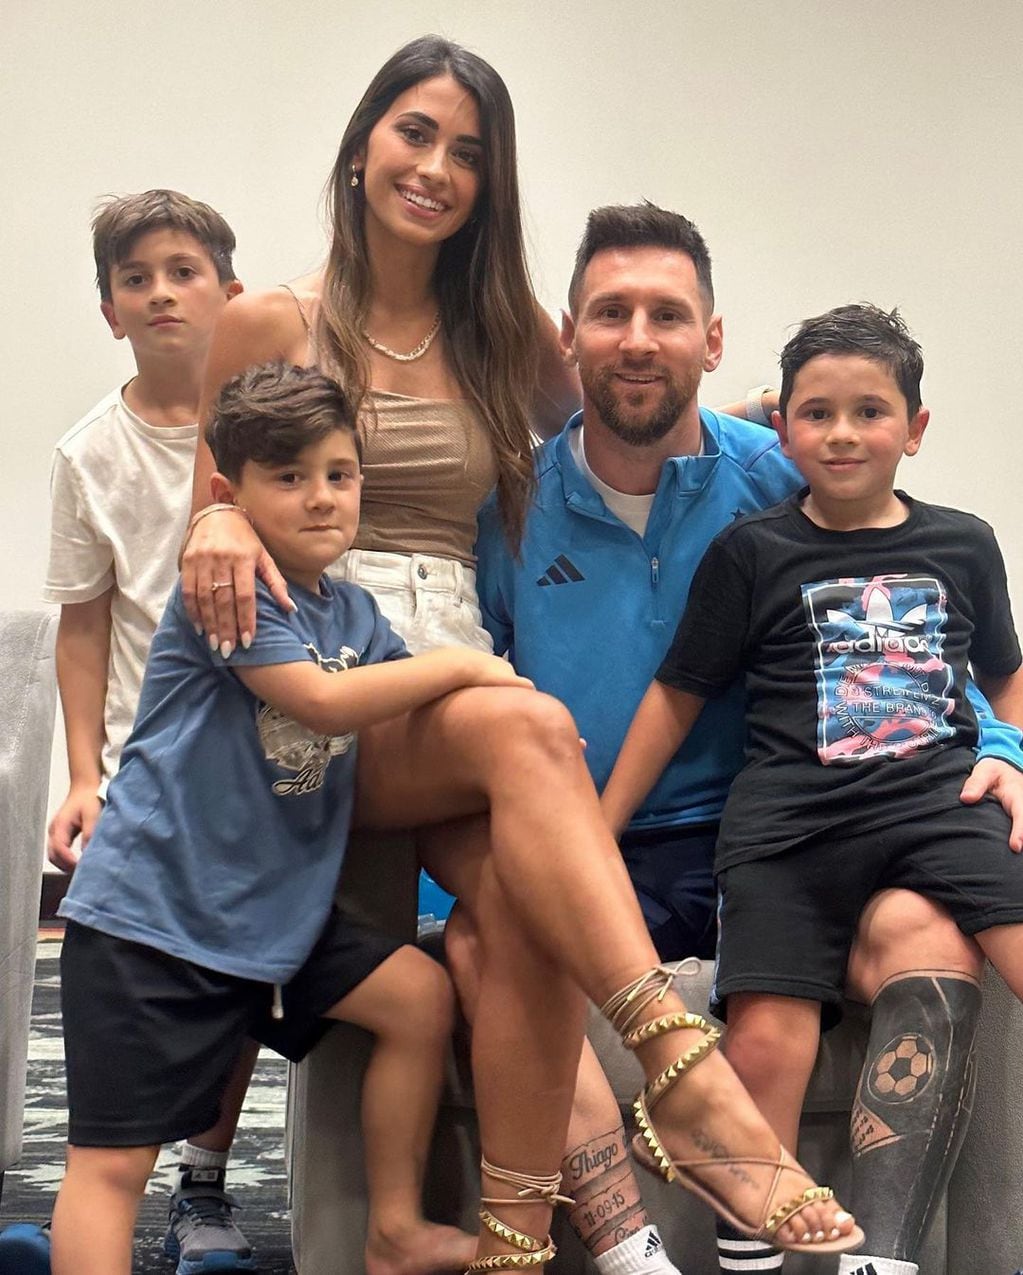 Antonela Roccuzzo y sus hijos celebraron la victoria de la Selección Argentina y Messi.